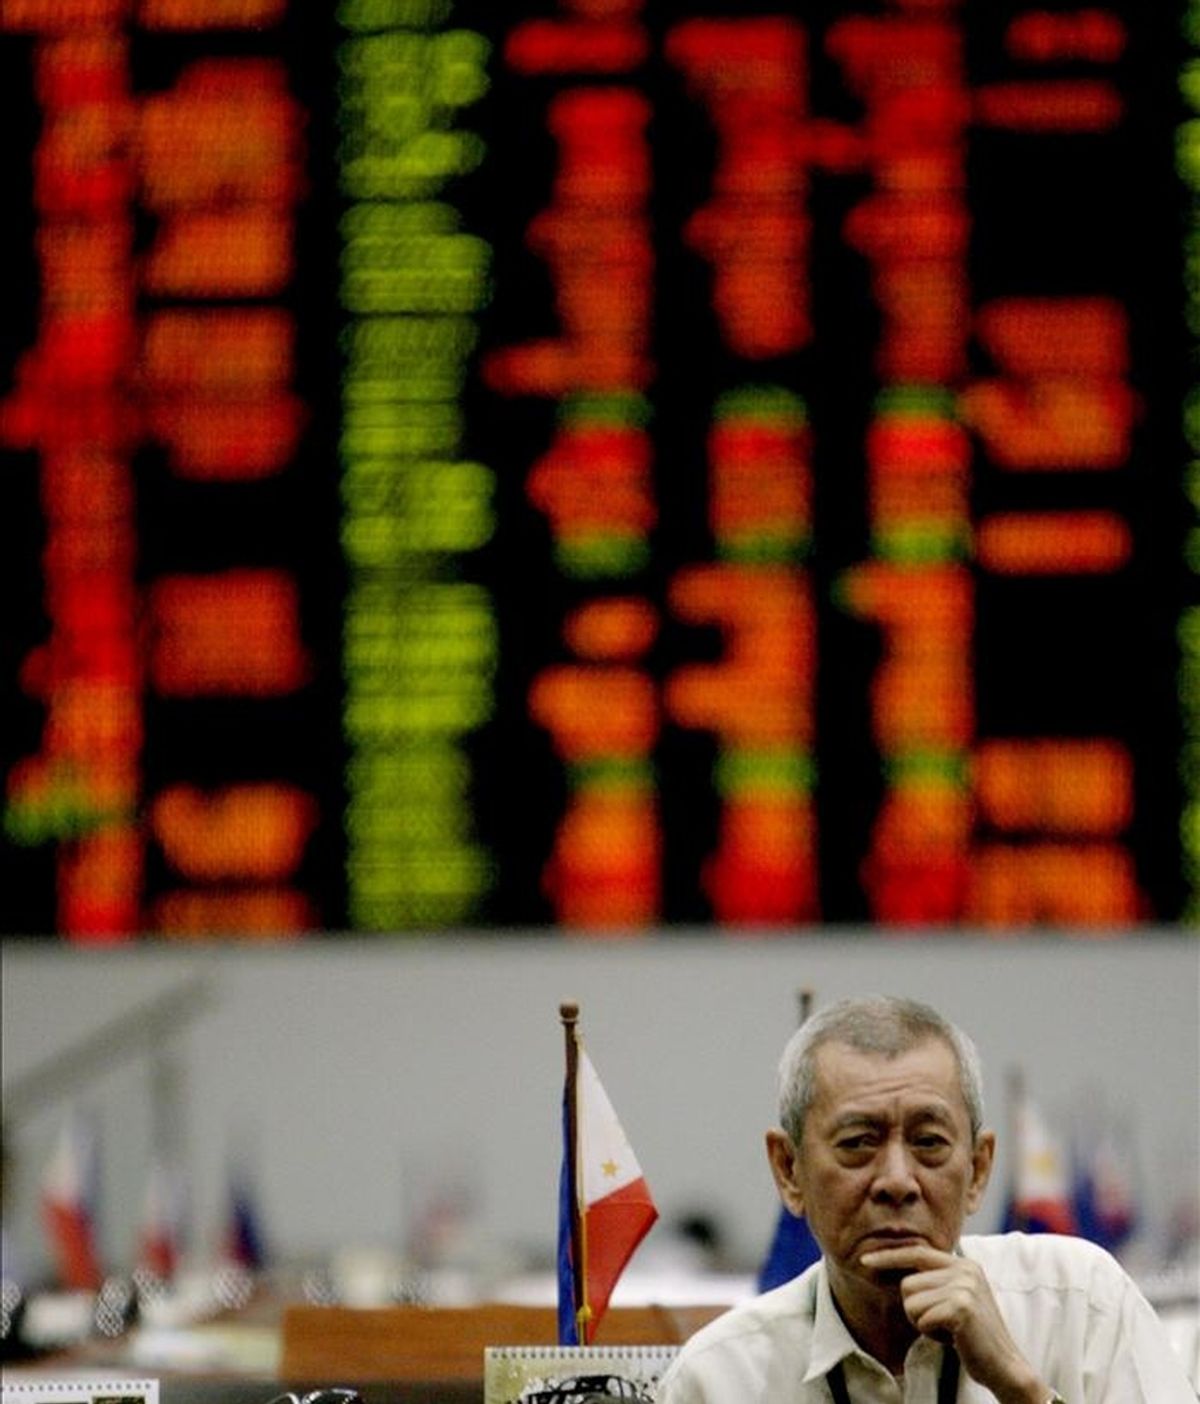 Un agente de bolsa filipino observa el estado de las acciones en la Bolsa del distrito financiero de Makati, en el sur de Manila (Filipinas). EFE/Archivo